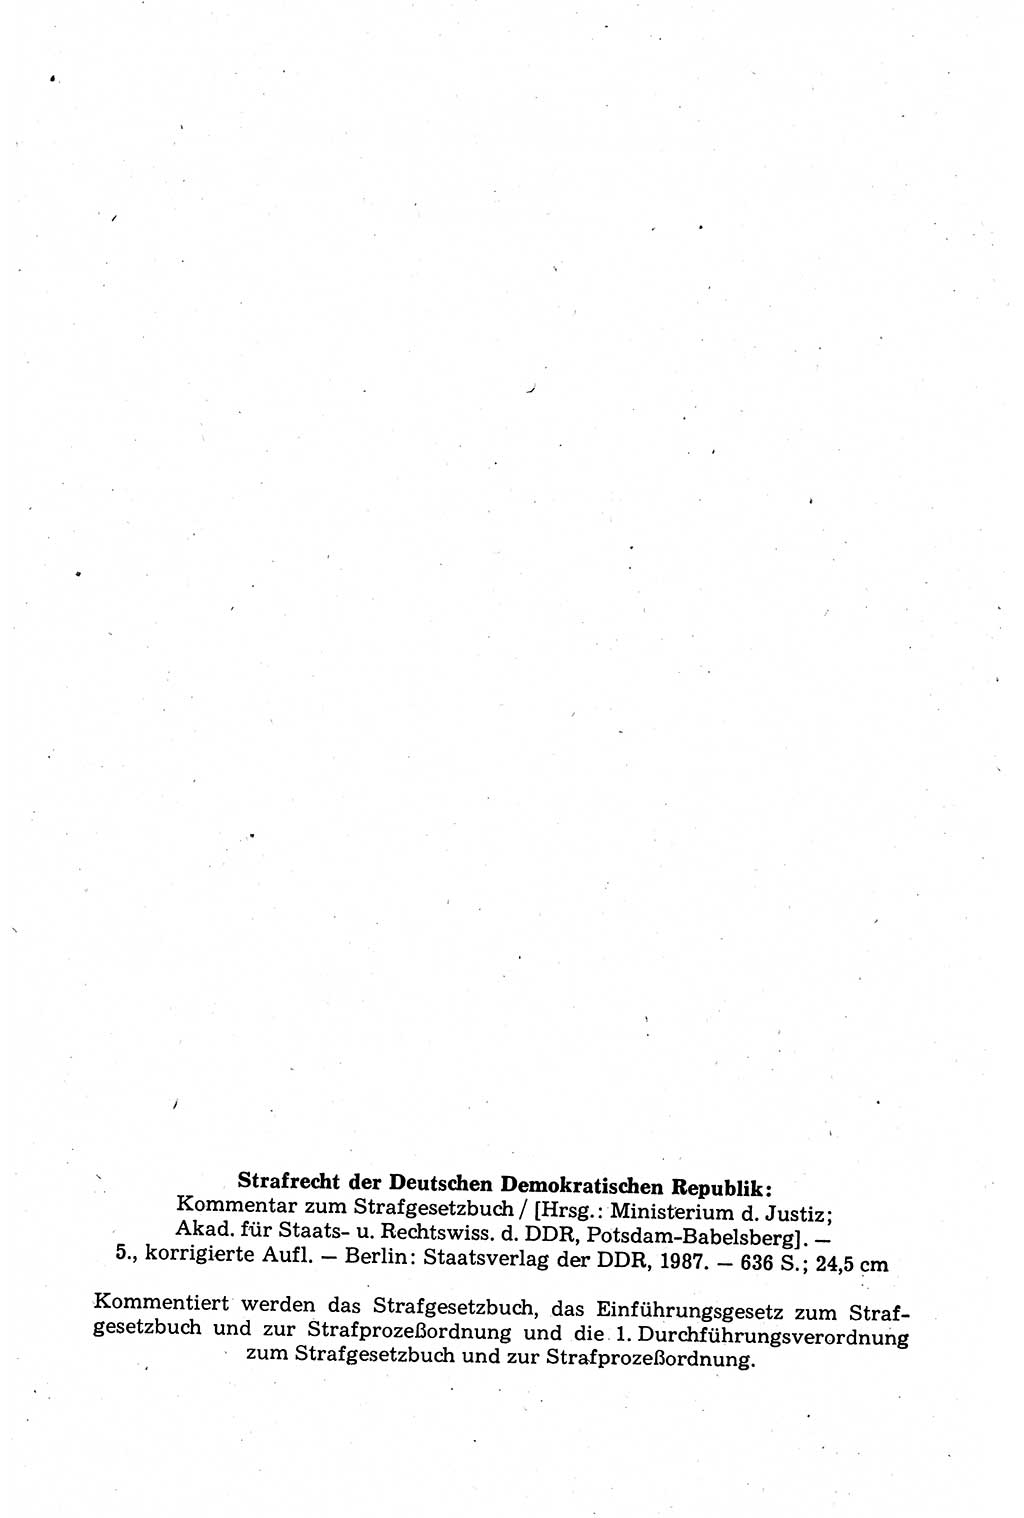 Strafrecht der Deutschen Demokratischen Republik (DDR), Kommentar zum Strafgesetzbuch (StGB) 1987, Seite 2 (Strafr. DDR Komm. StGB 1987, S. 2)